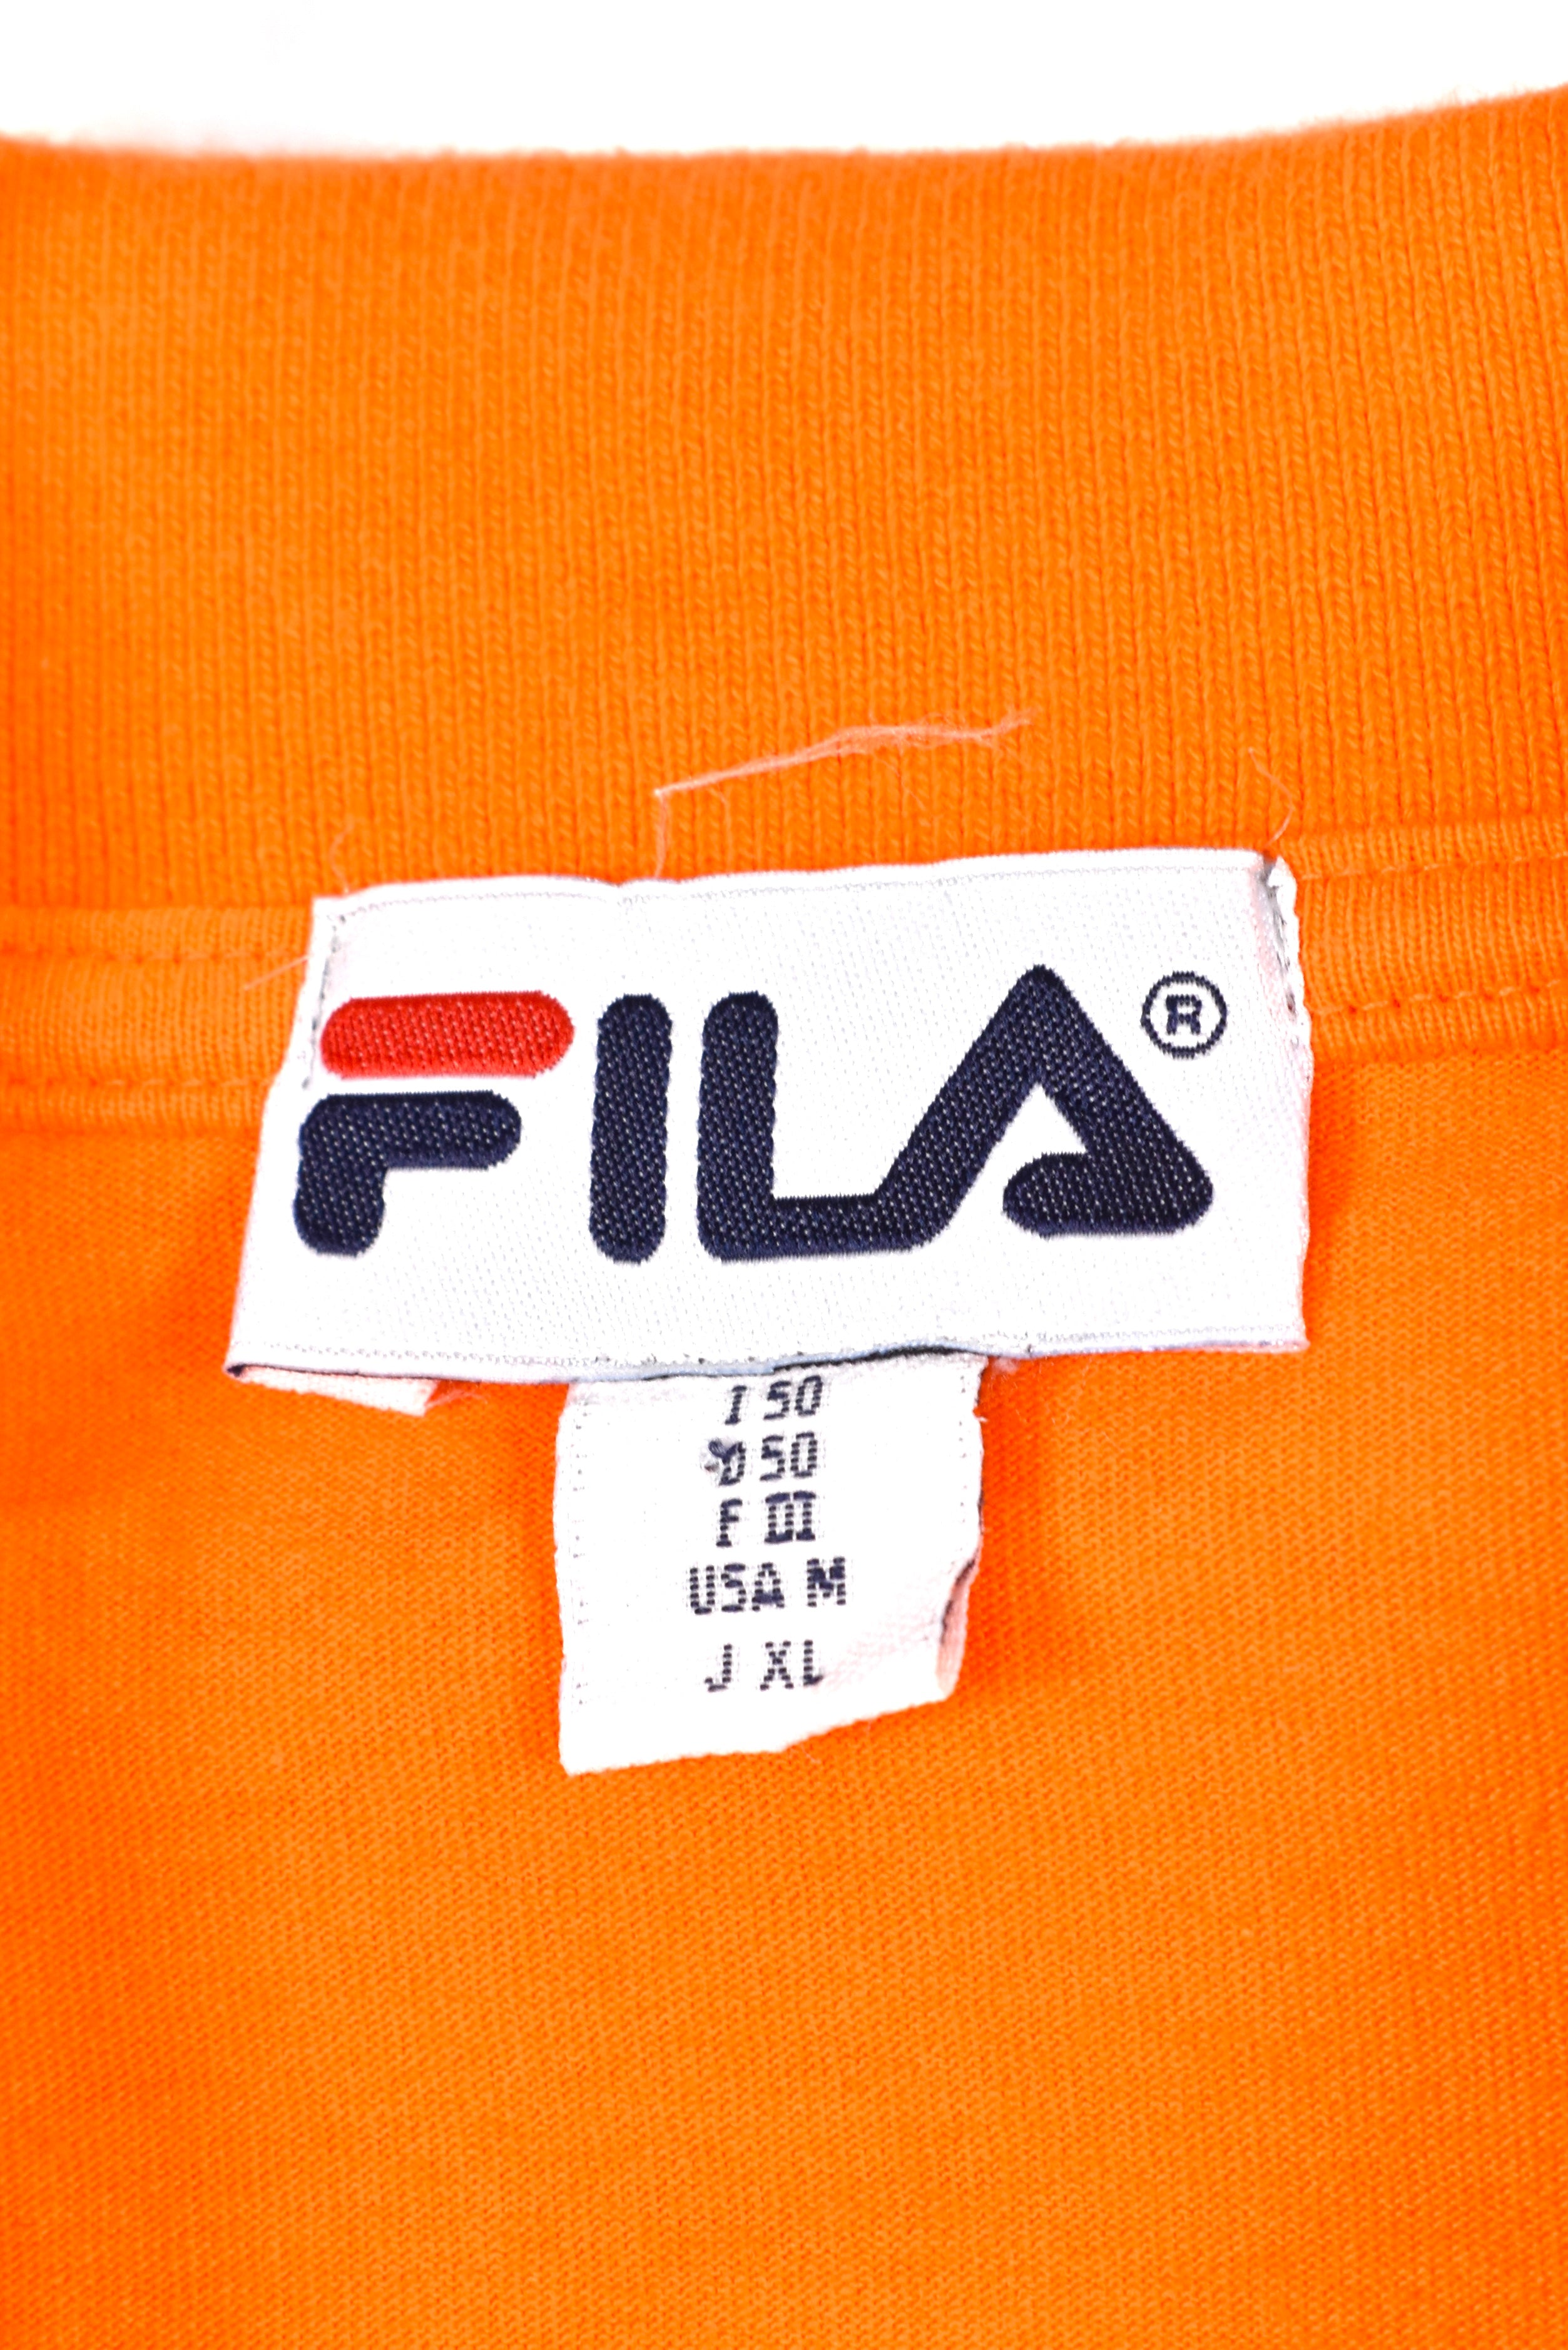 Vintage Fila polo shirt, orange long sleeve embroidered tee - AU XL FILA